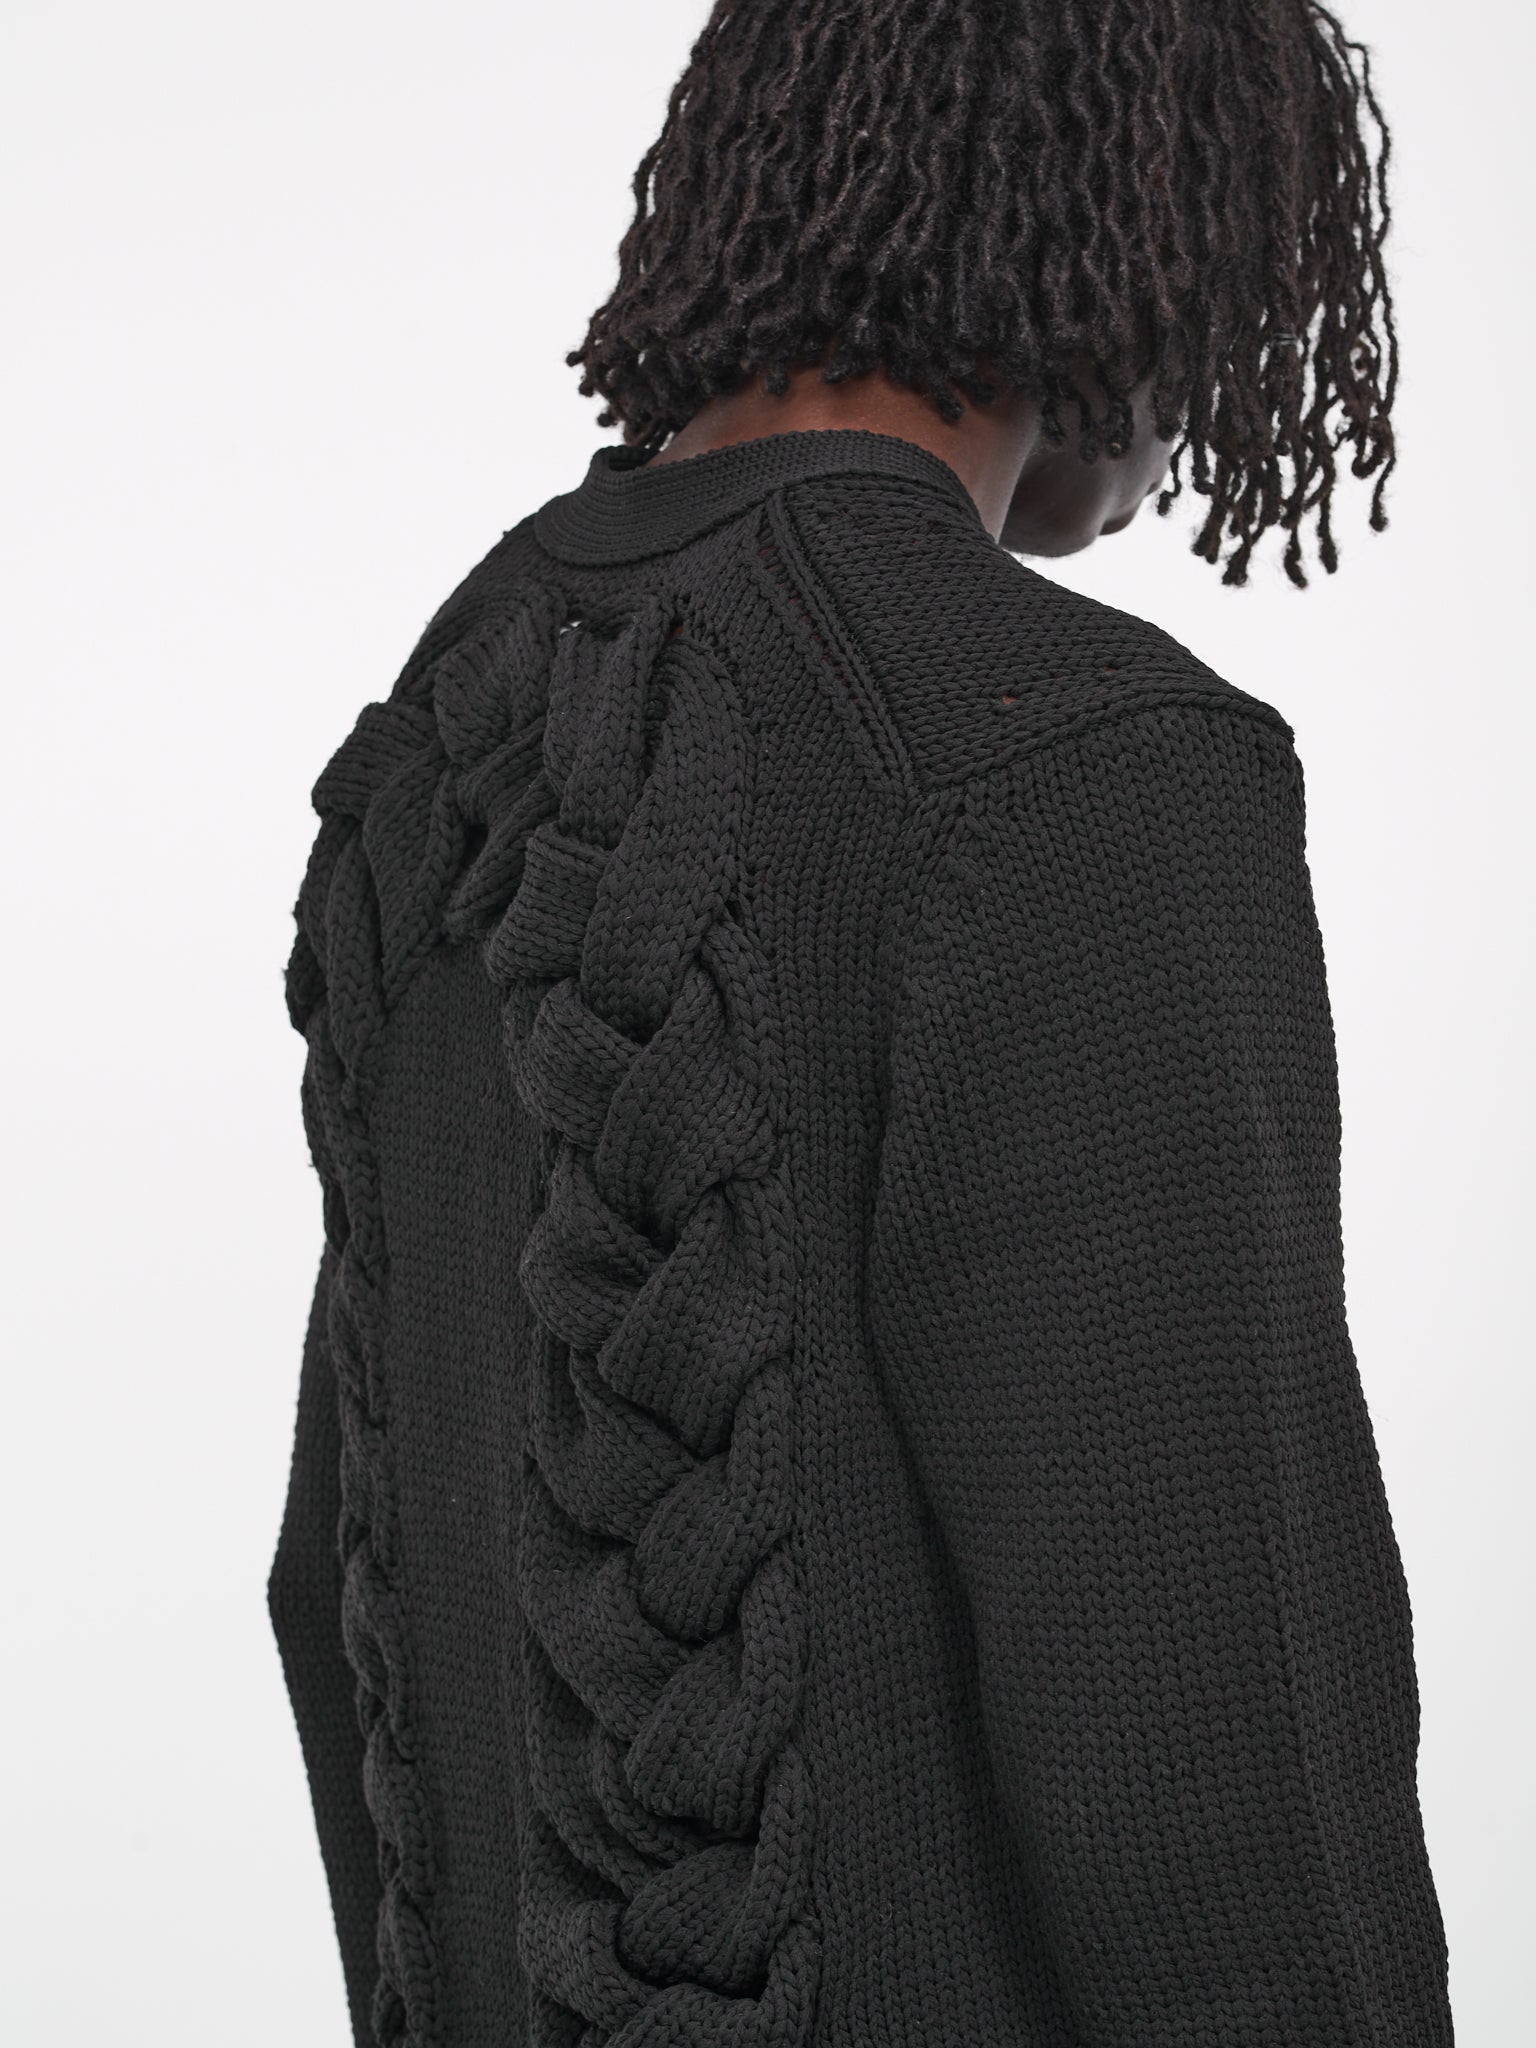 Braided Knit Cardigan (PL-N008-051-BLACK)